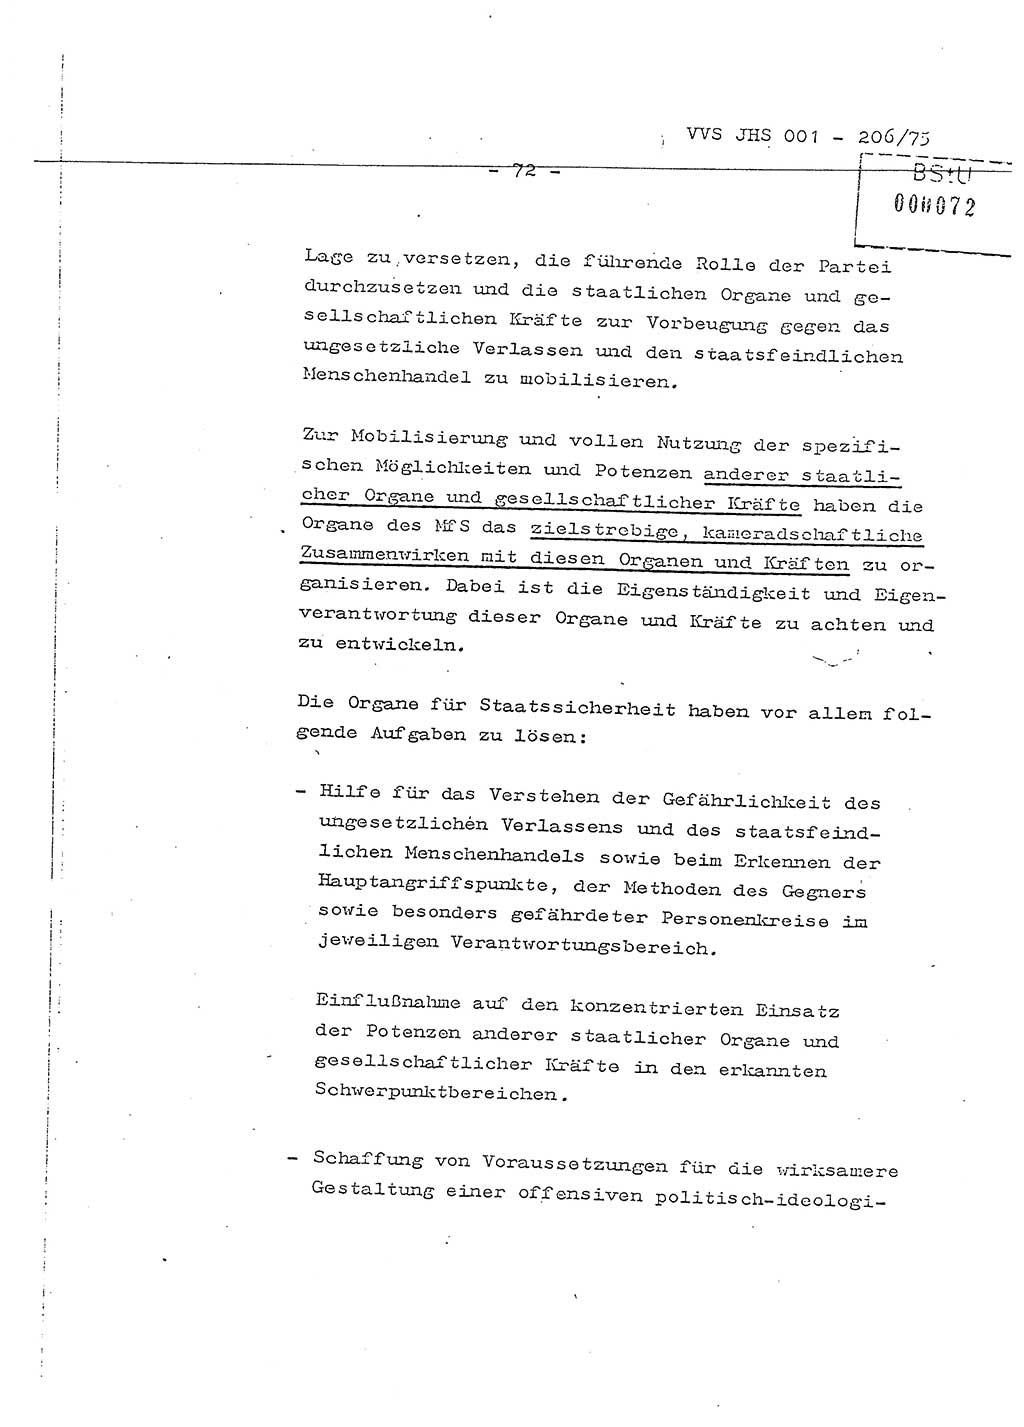 Dissertation Generalmajor Manfred Hummitzsch (Leiter der BV Leipzig), Generalmajor Heinz Fiedler (HA Ⅵ), Oberst Rolf Fister (HA Ⅸ), Ministerium für Staatssicherheit (MfS) [Deutsche Demokratische Republik (DDR)], Juristische Hochschule (JHS), Vertrauliche Verschlußsache (VVS) 001-206/75, Potsdam 1975, Seite 72 (Diss. MfS DDR JHS VVS 001-206/75 1975, S. 72)